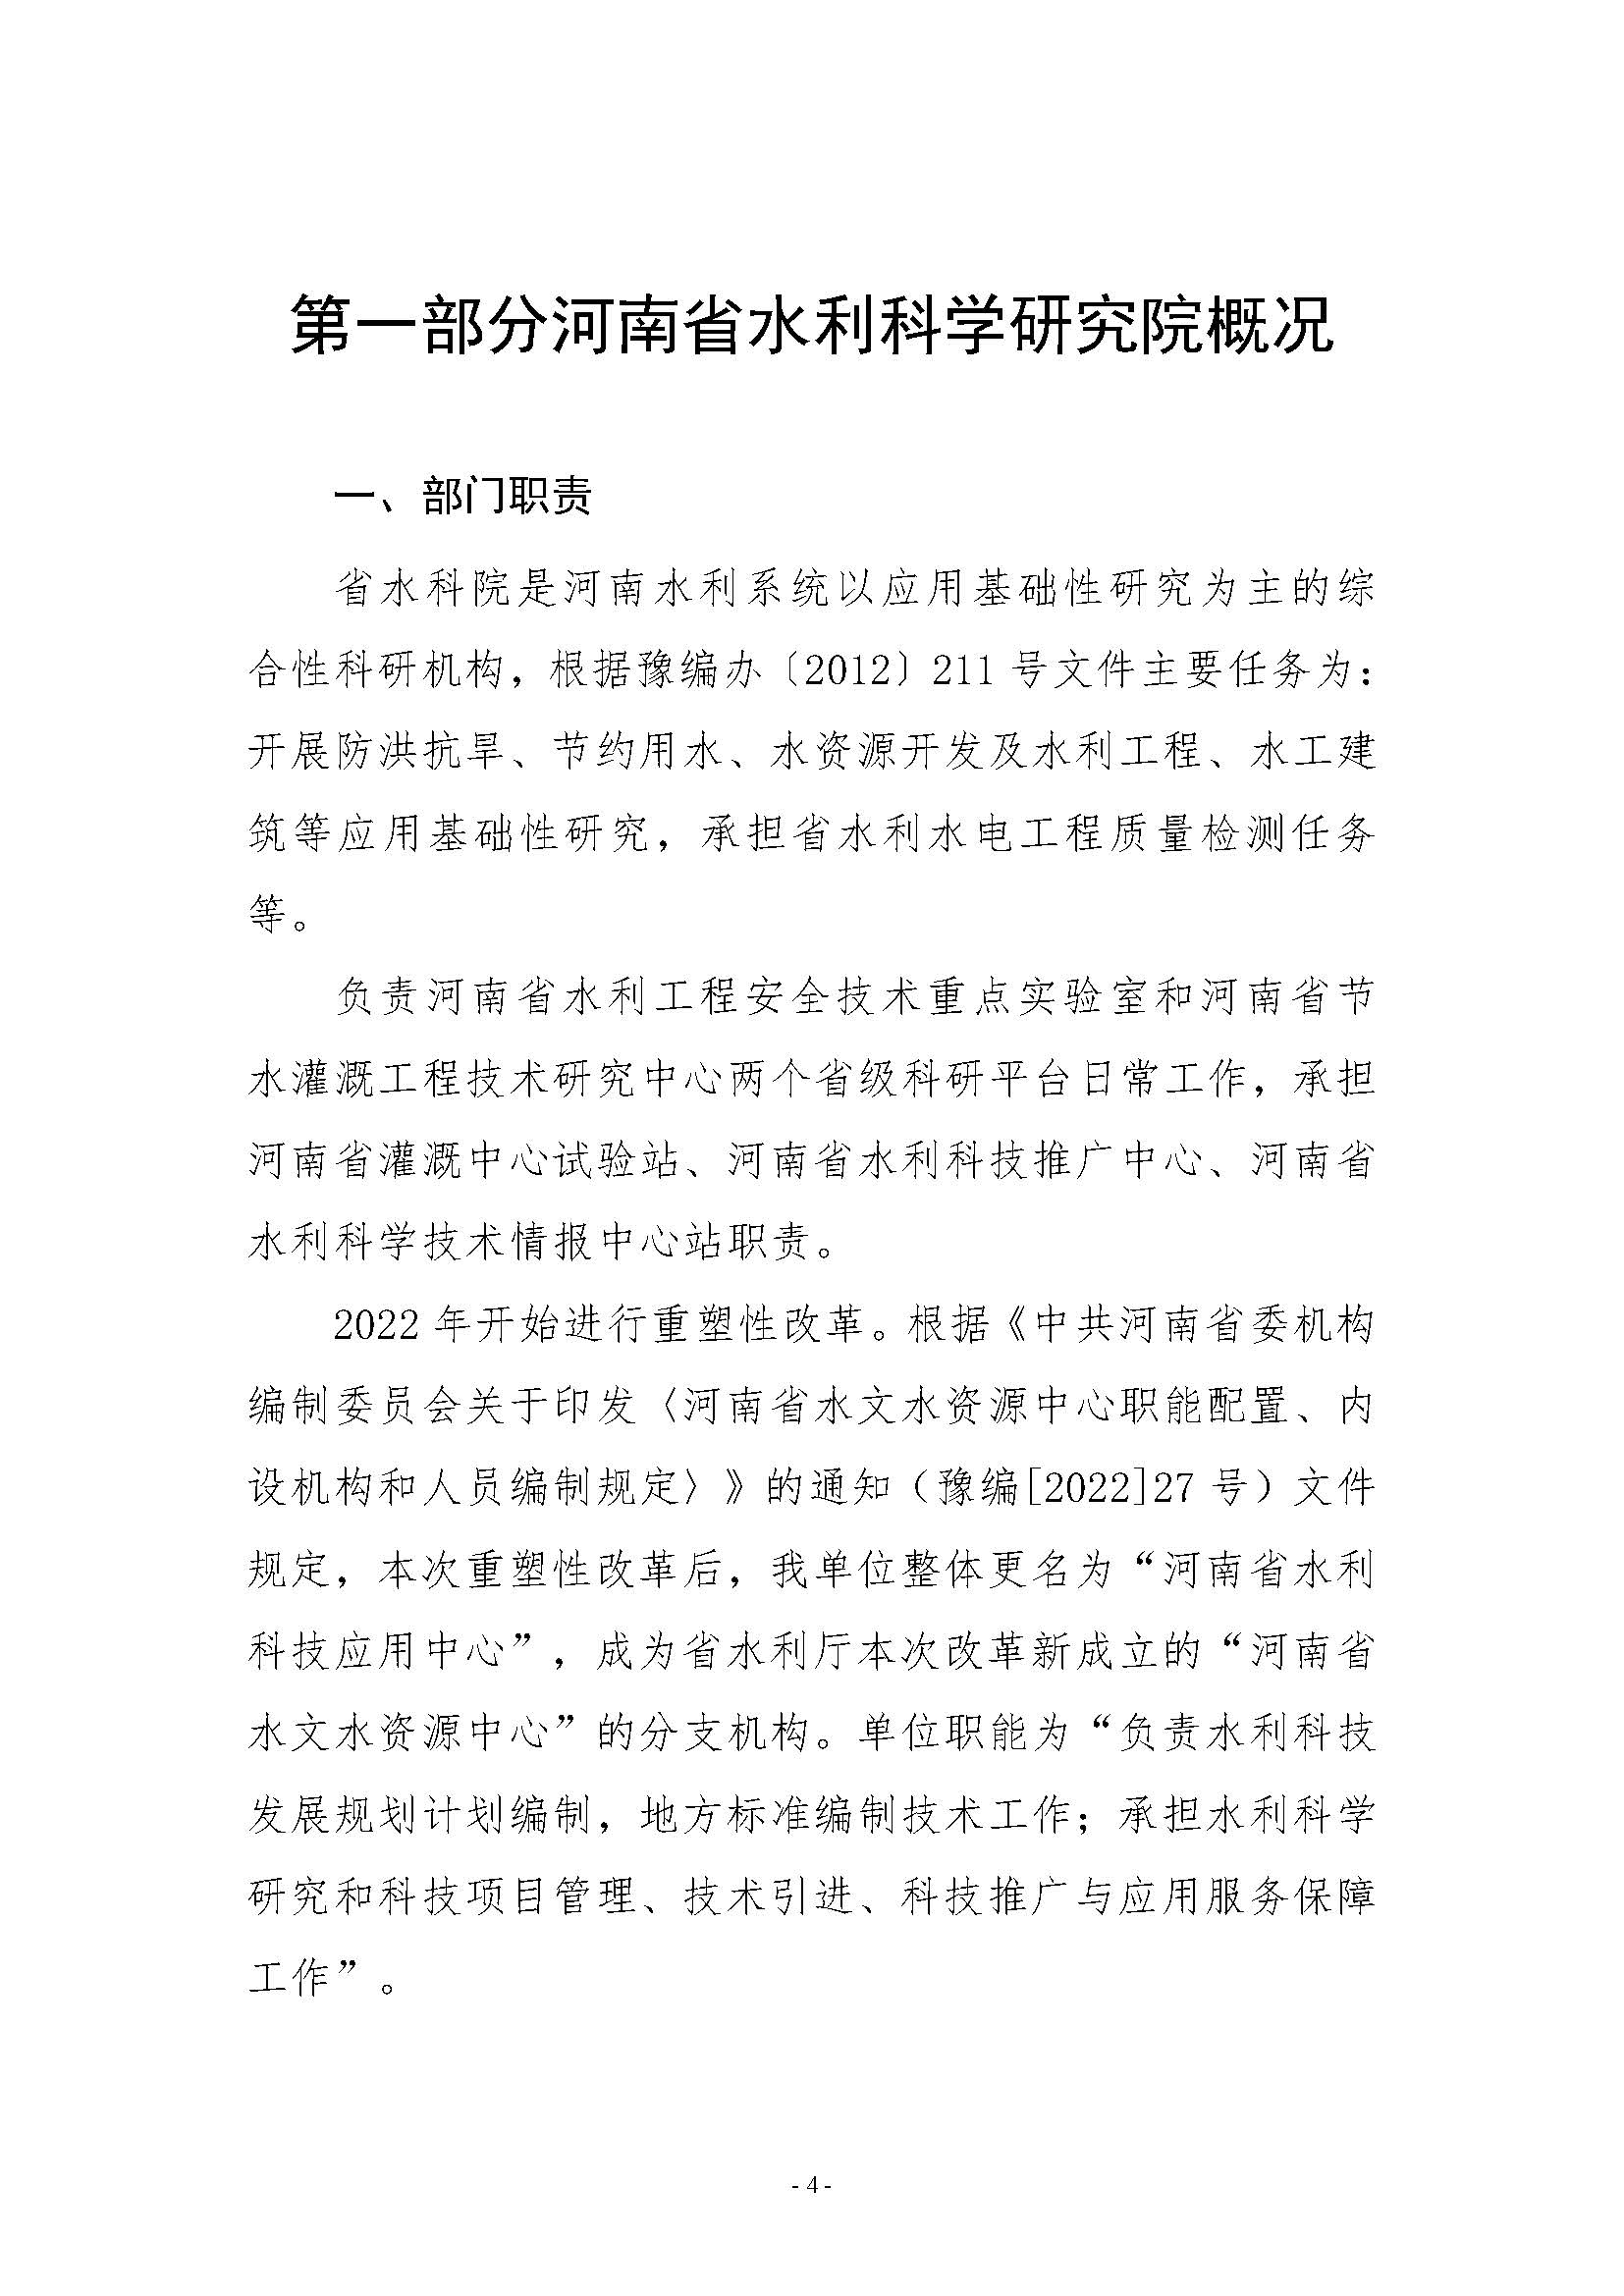 河南省水利科学研究院2022年年度省直部门决算公开(2)_页面_04.jpg